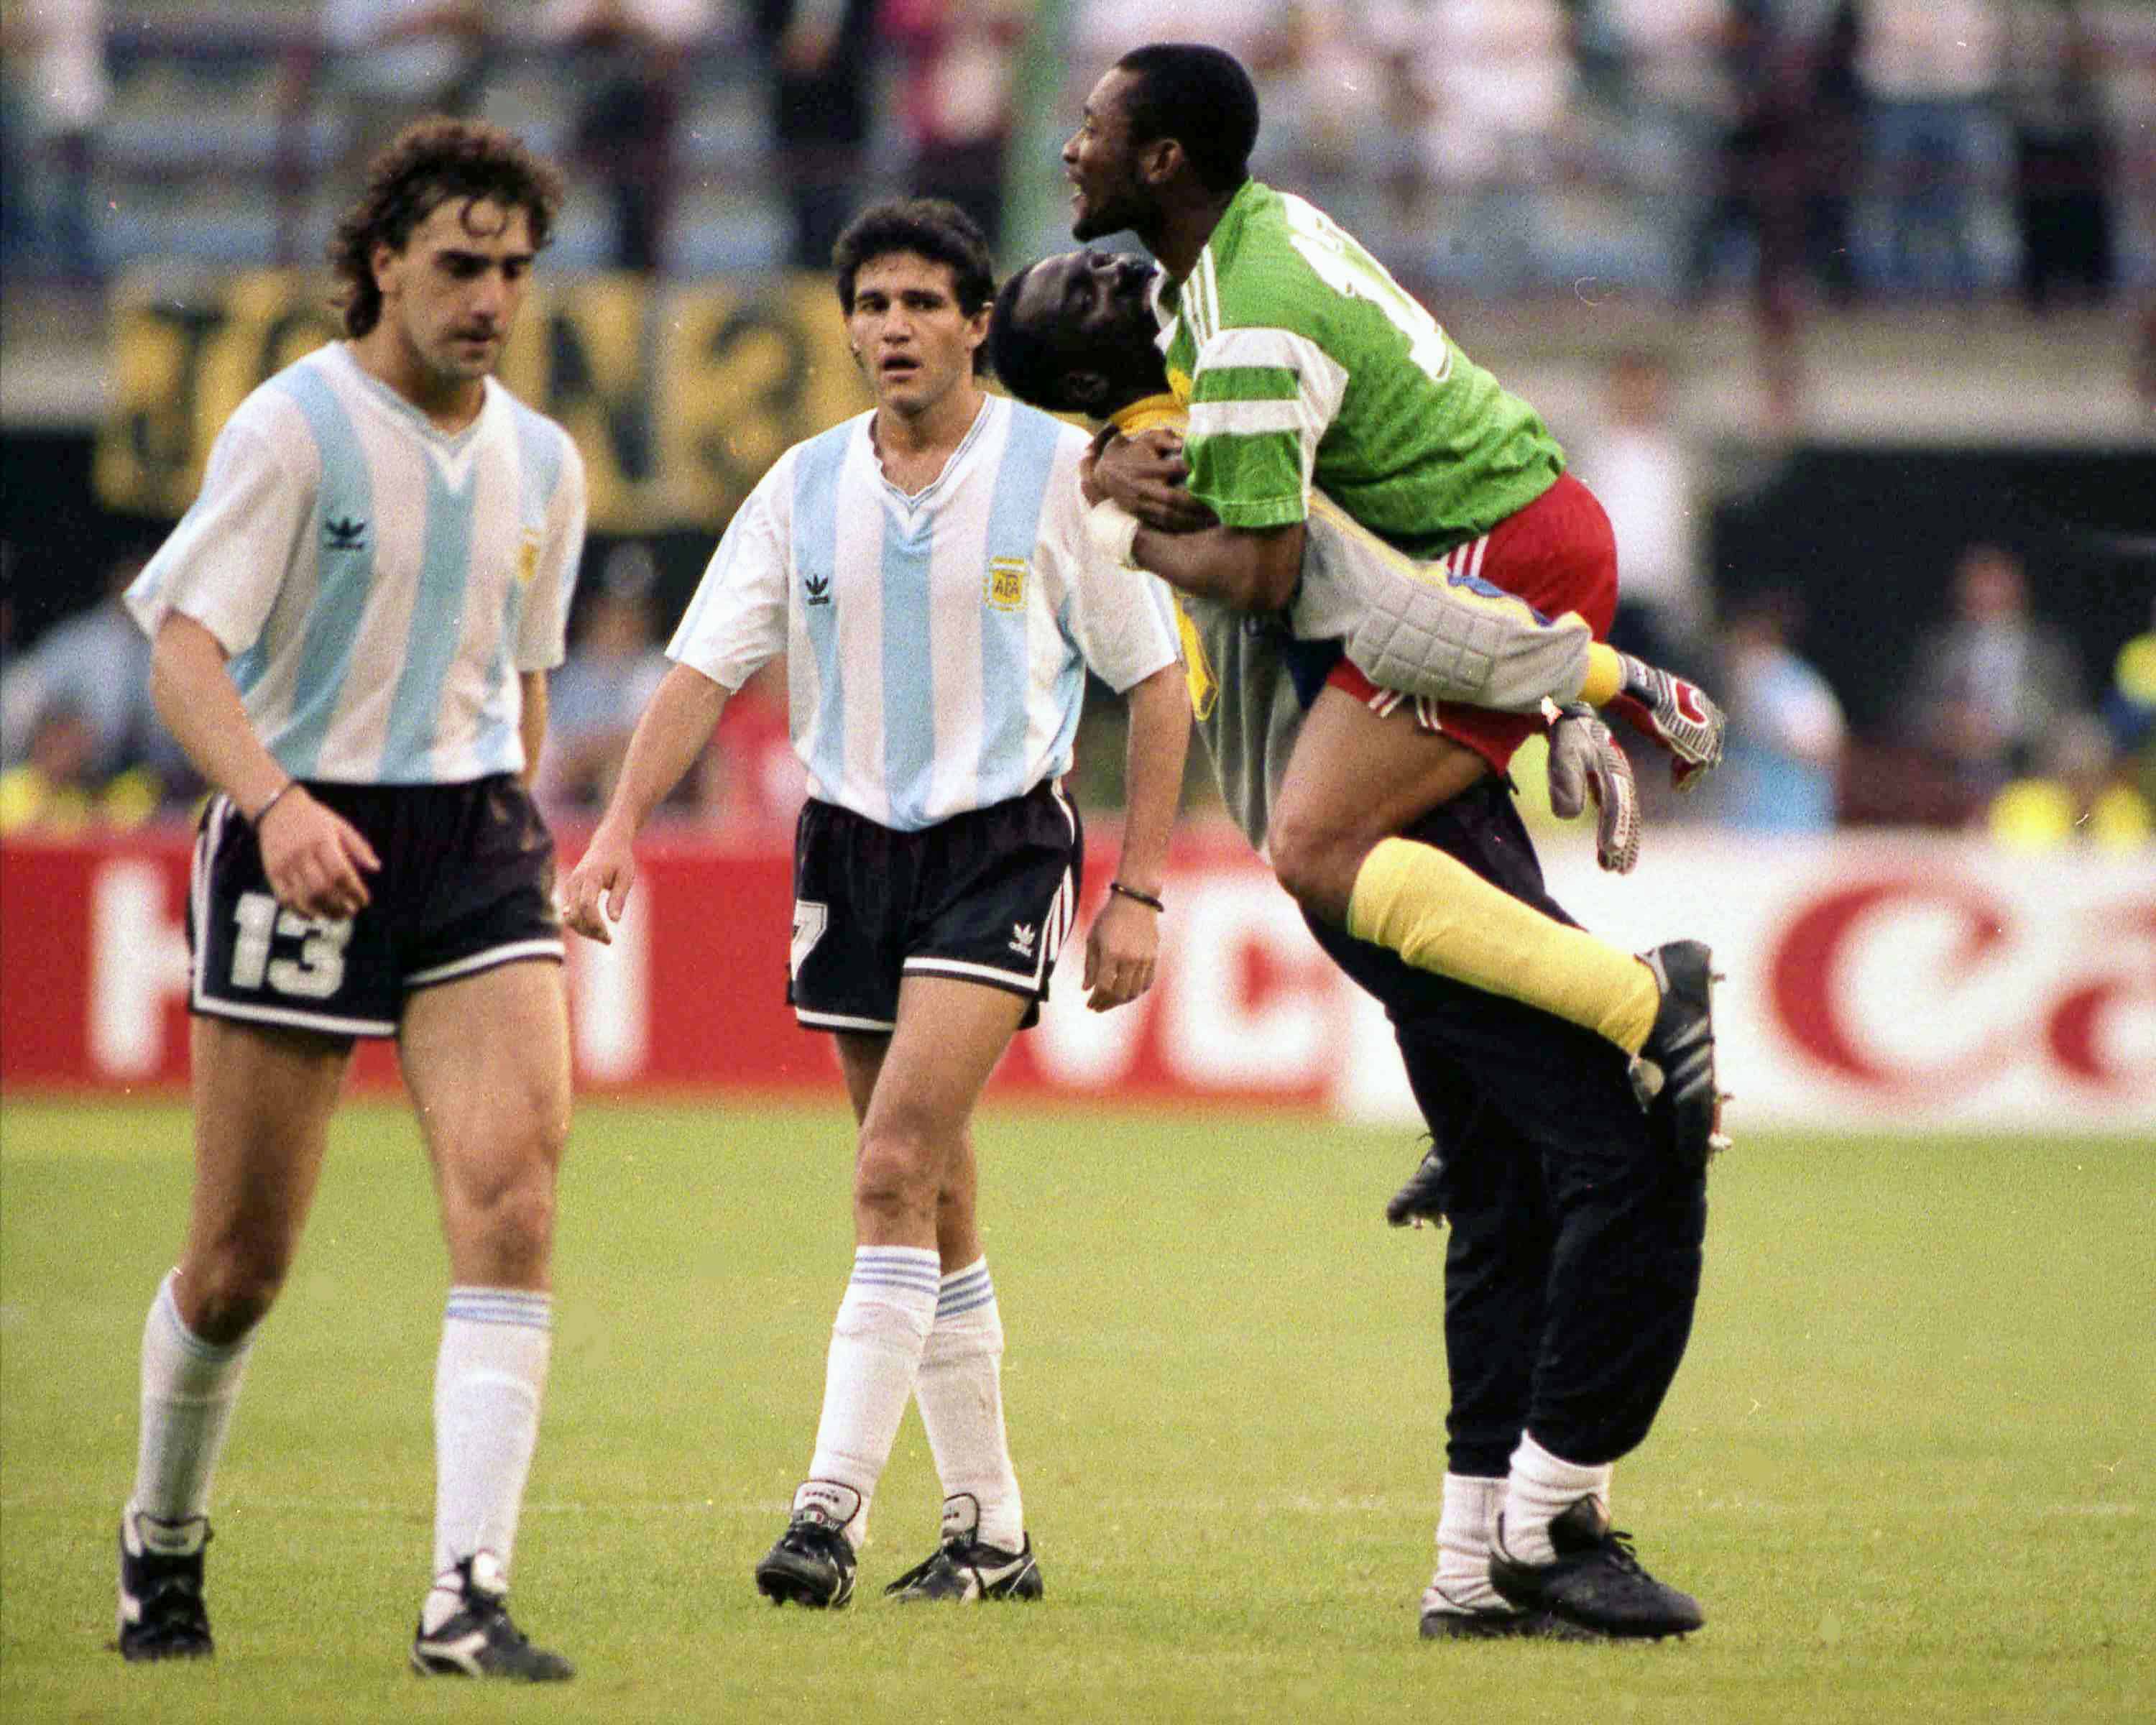 Los abatidos jugadores argentinos Néstor Gabriel Lorenzo, a la izquierda, y Jorge Luis Burruchaga salen de la cancha, pasan junto a jugadores cameruneses que celebran, después del partido inaugural de la Copa Mundial de fútbol,  en Milán, Italia, el 8 de junio de 1990. Camerún derrotó al campeón defensor Argentina 1-0 en 1990.